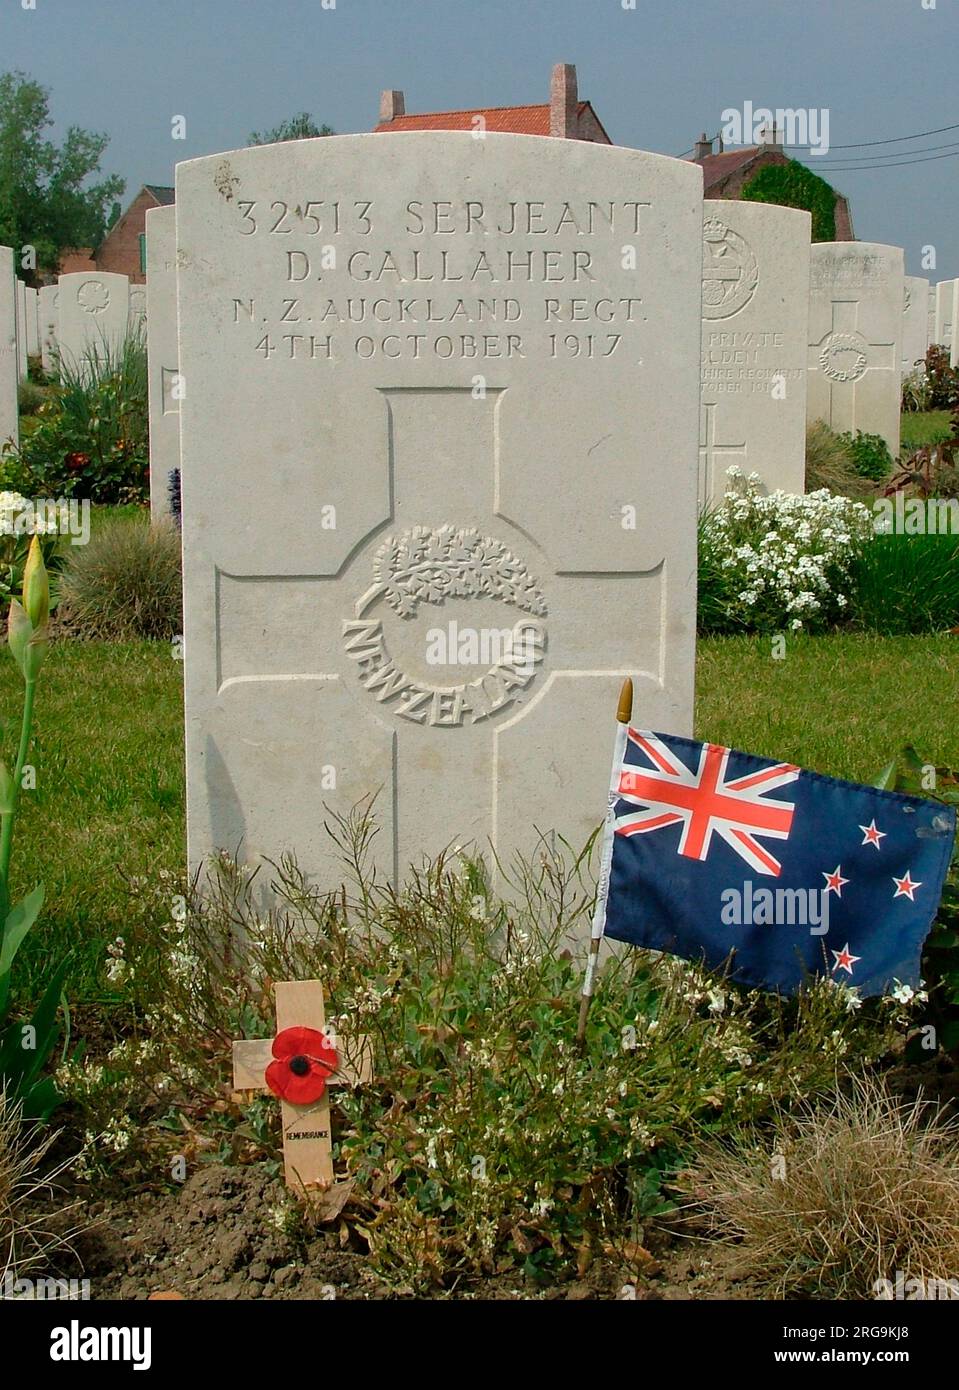 Auf dem Friedhof, gleich außerhalb von Poperinghe, befinden sich über 1.500 Commonwealth- und 37 deutsche Gräber. Es gibt auch 22 WW2 Beerdigungen vom Rückzug nach Dünkirchen. David Gallagher vom 2. Bataillon Auckland Regiment wurde am 4. Oktober 1917 im Alter von 41 Jahren getötet. Er war ein ehemaliger Kapitän des All Blacks Rugby-Teams. Stockfoto